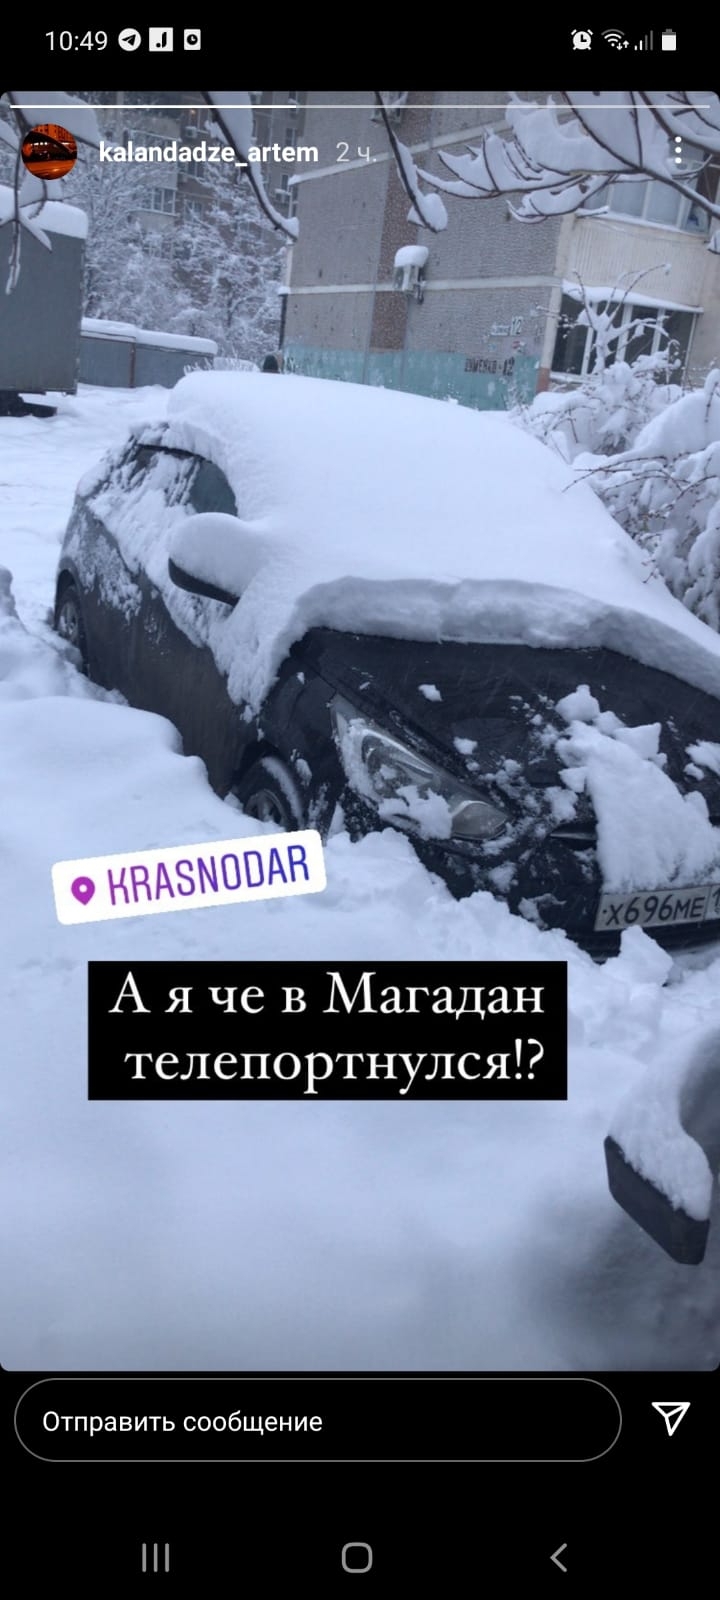 Краснодар установил снежный рекорд: столько осадков не было за историю метеорологии